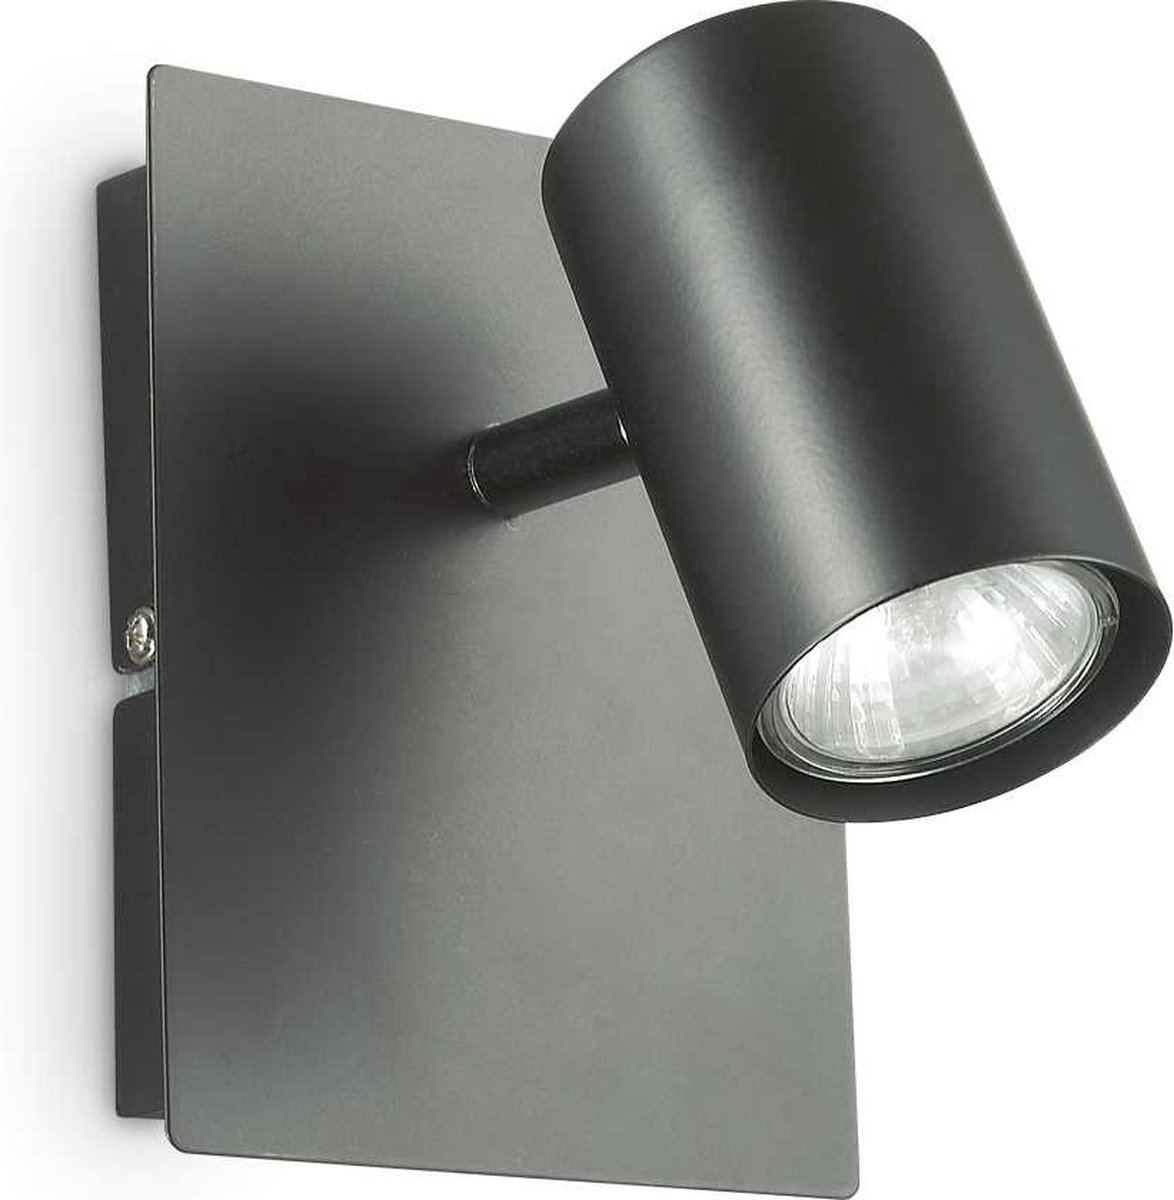 Ideal Your Lux - Wandlamp Landelijk - Metaal - GU10 - Voor Binnen - Lamp - Lampen - Woonkamer - Eetkamer - Slaapkamer - Zwart